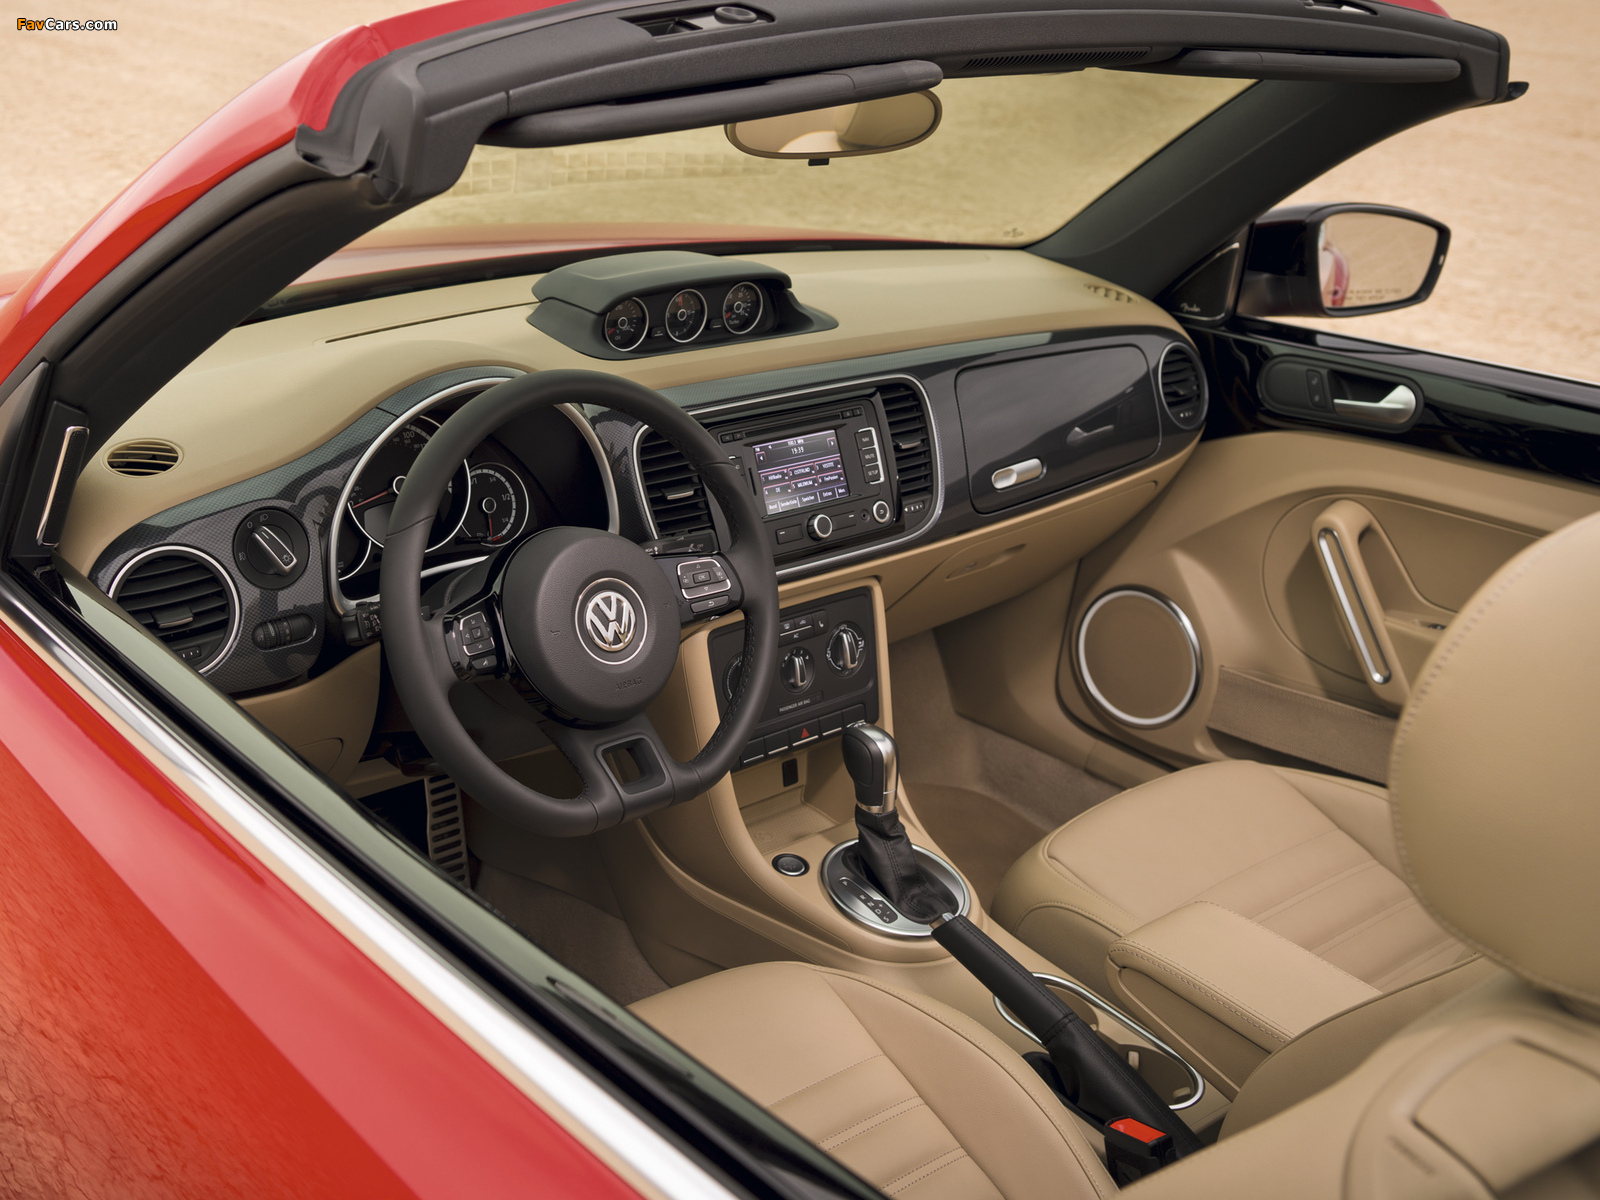 Volkswagen Beetle Convertible Turbo 2012 photos (1600 x 1200)